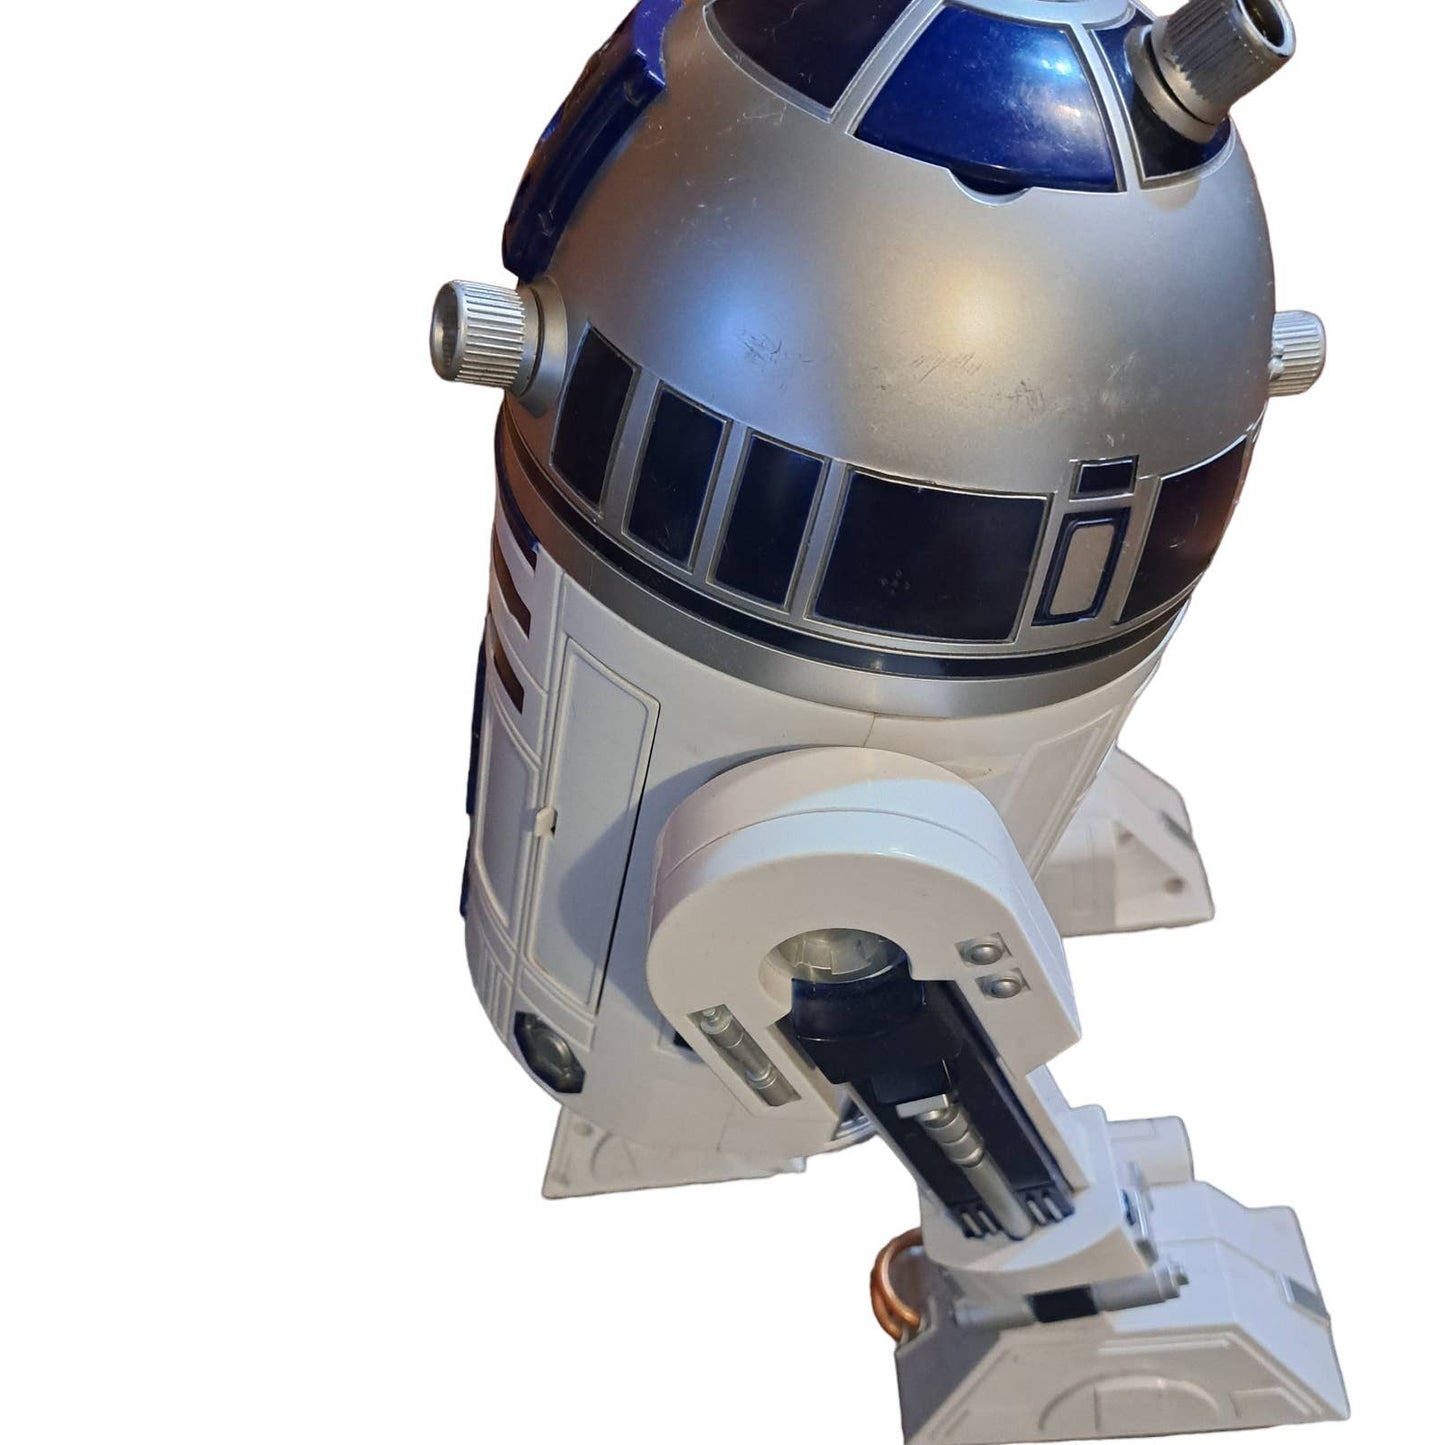 1.5 Foot INTERACTIVE whistle & beep fun- R2-D2 Super Cute Droid friend 4ever